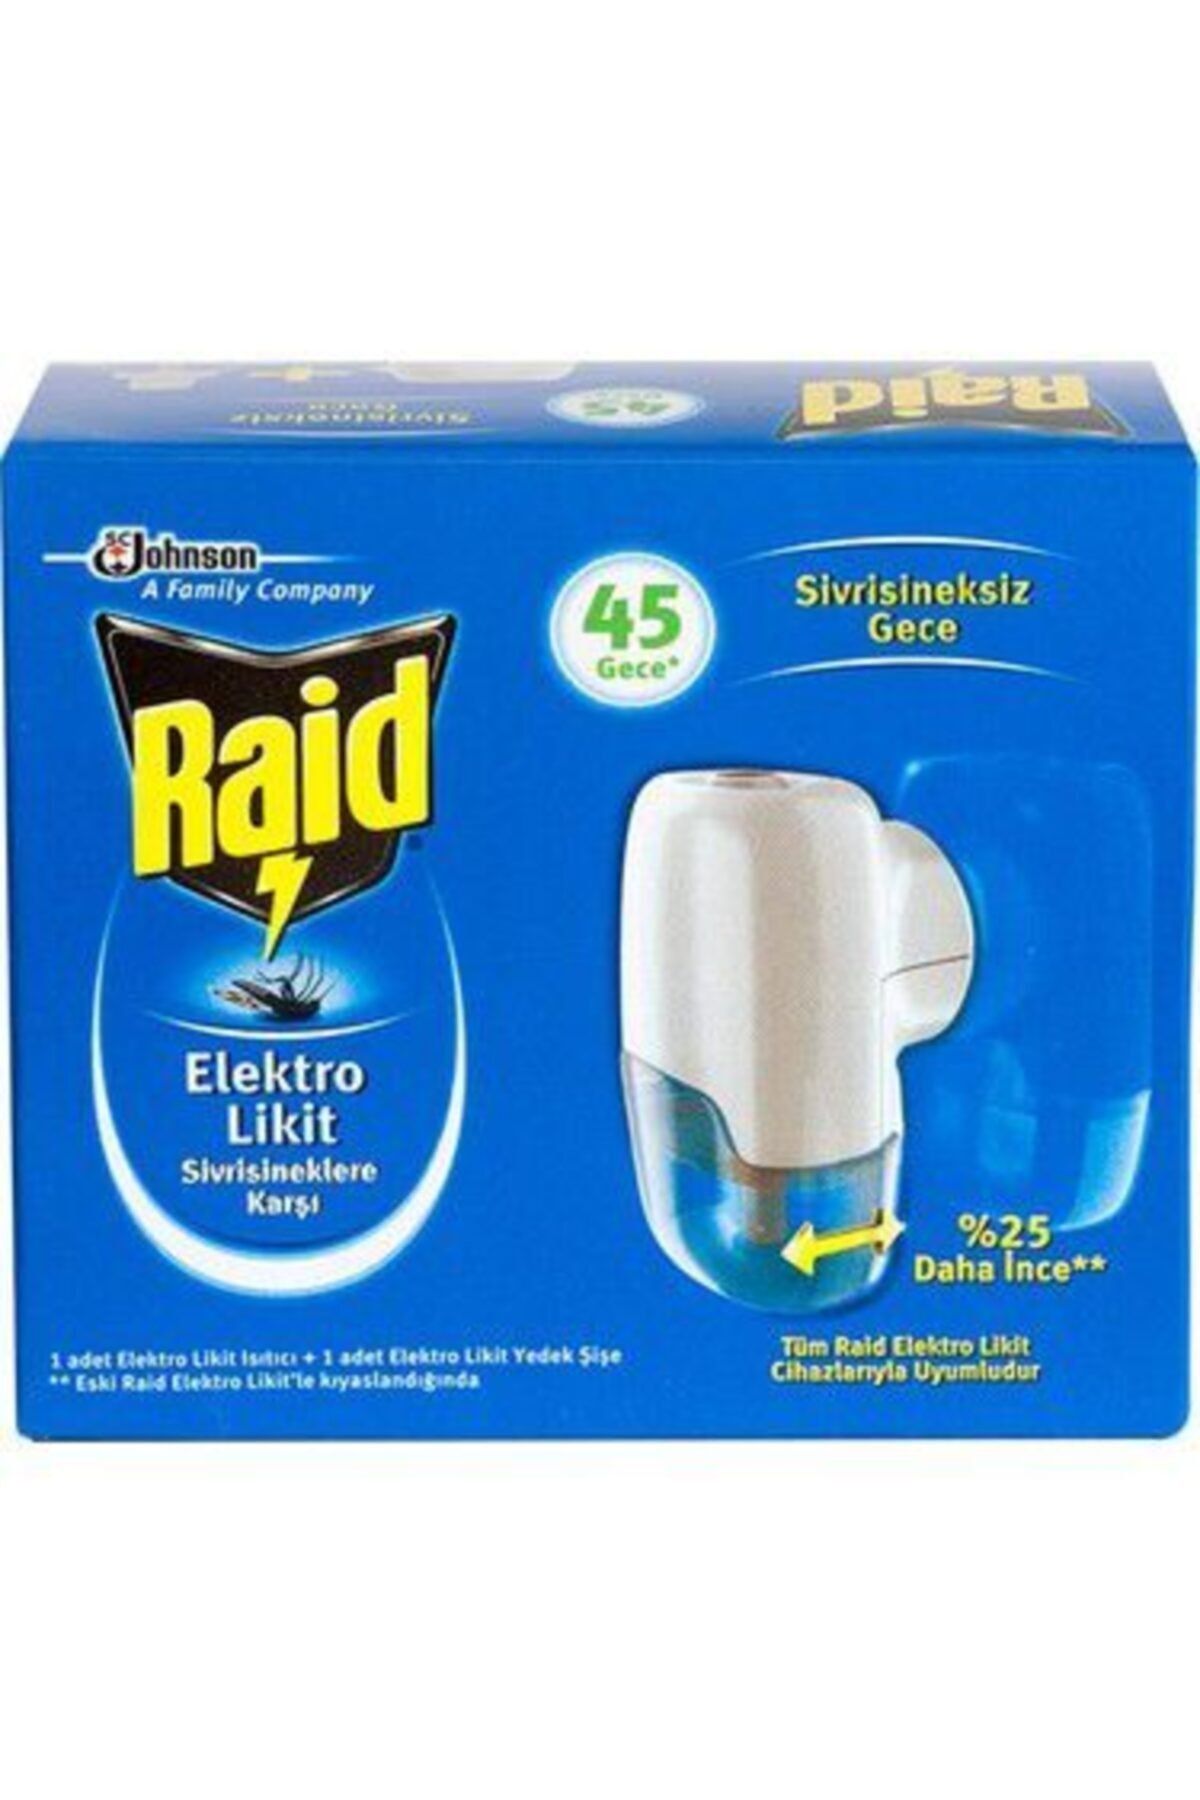 Raid Sivrisineklere Karşı 45 Gece Elektro Likit Cihaz + 1 Yedek